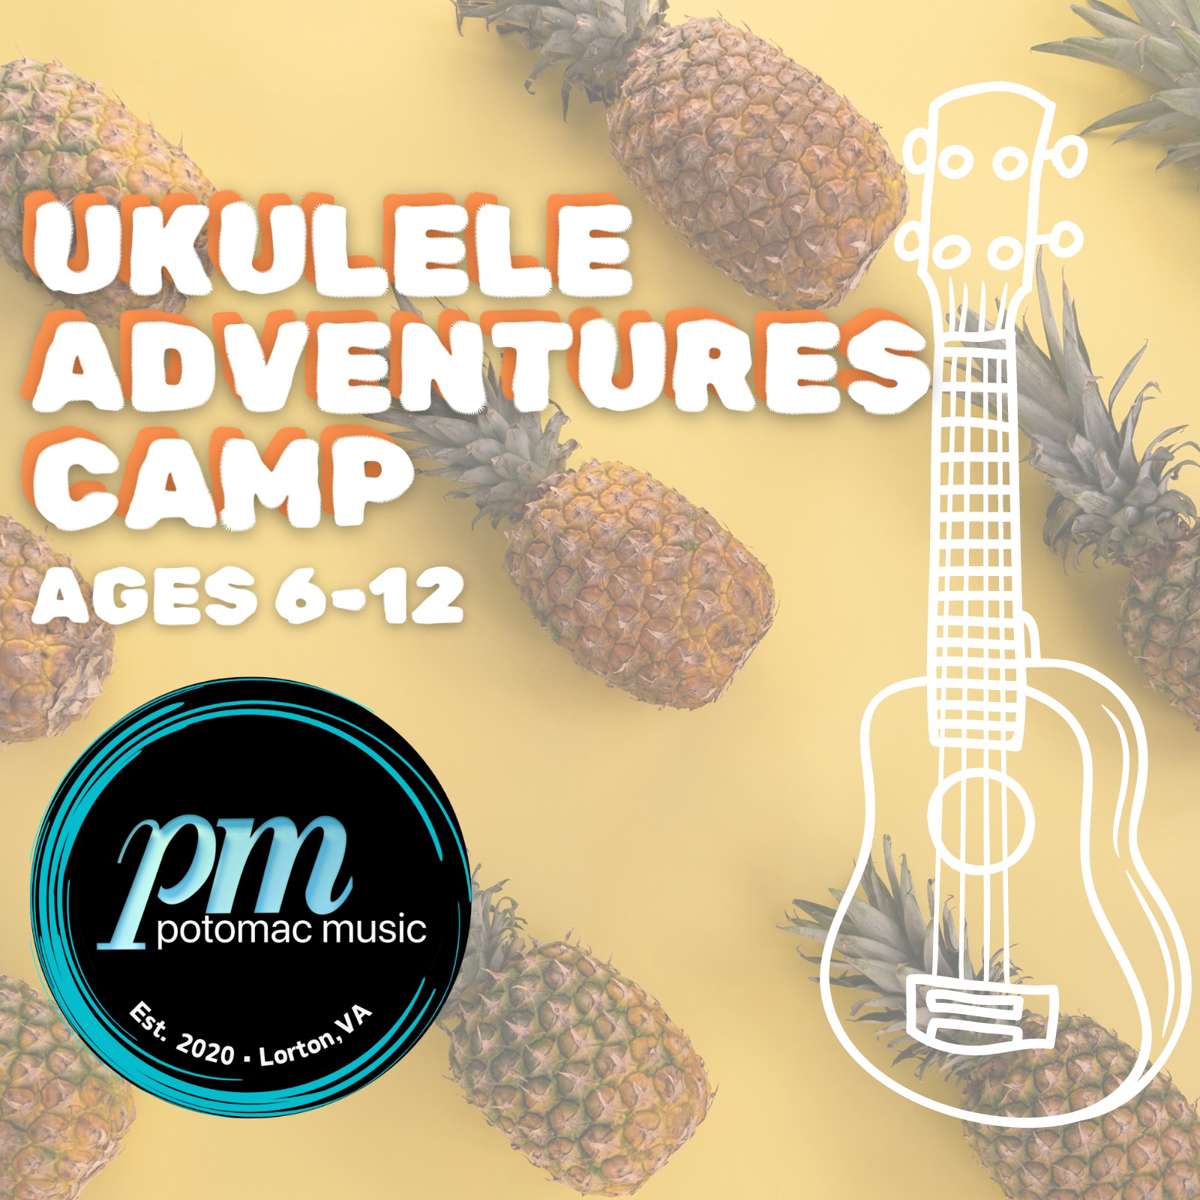 Ukulele Adventures Camp